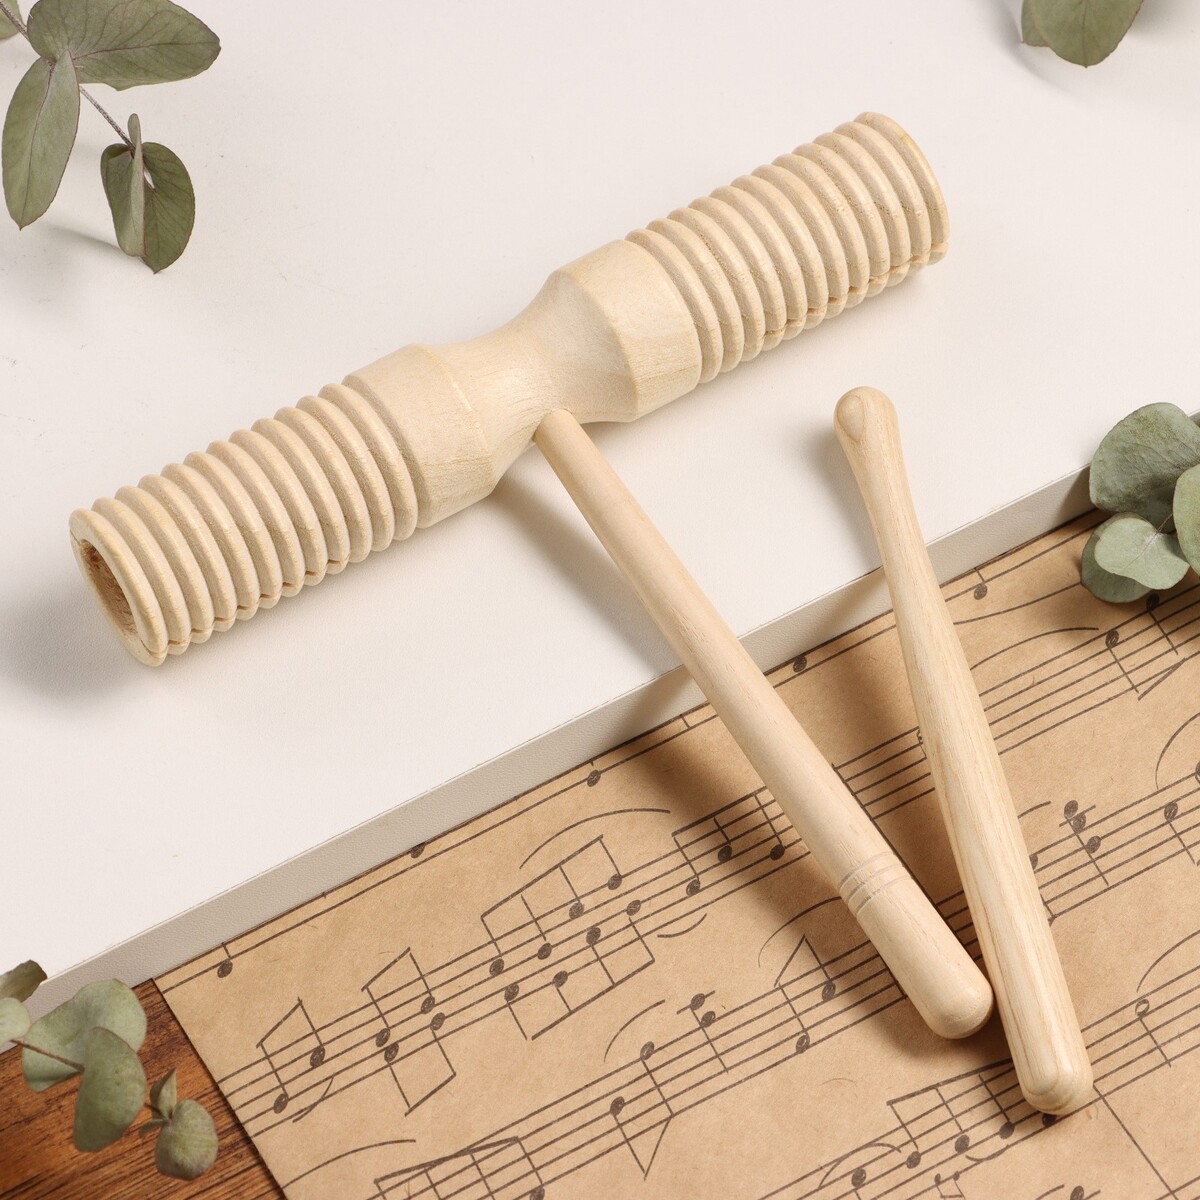 Музыкальный инструмент гуиро music life деревянный музыкальный инструмент гуиро music life деревянный одноручный